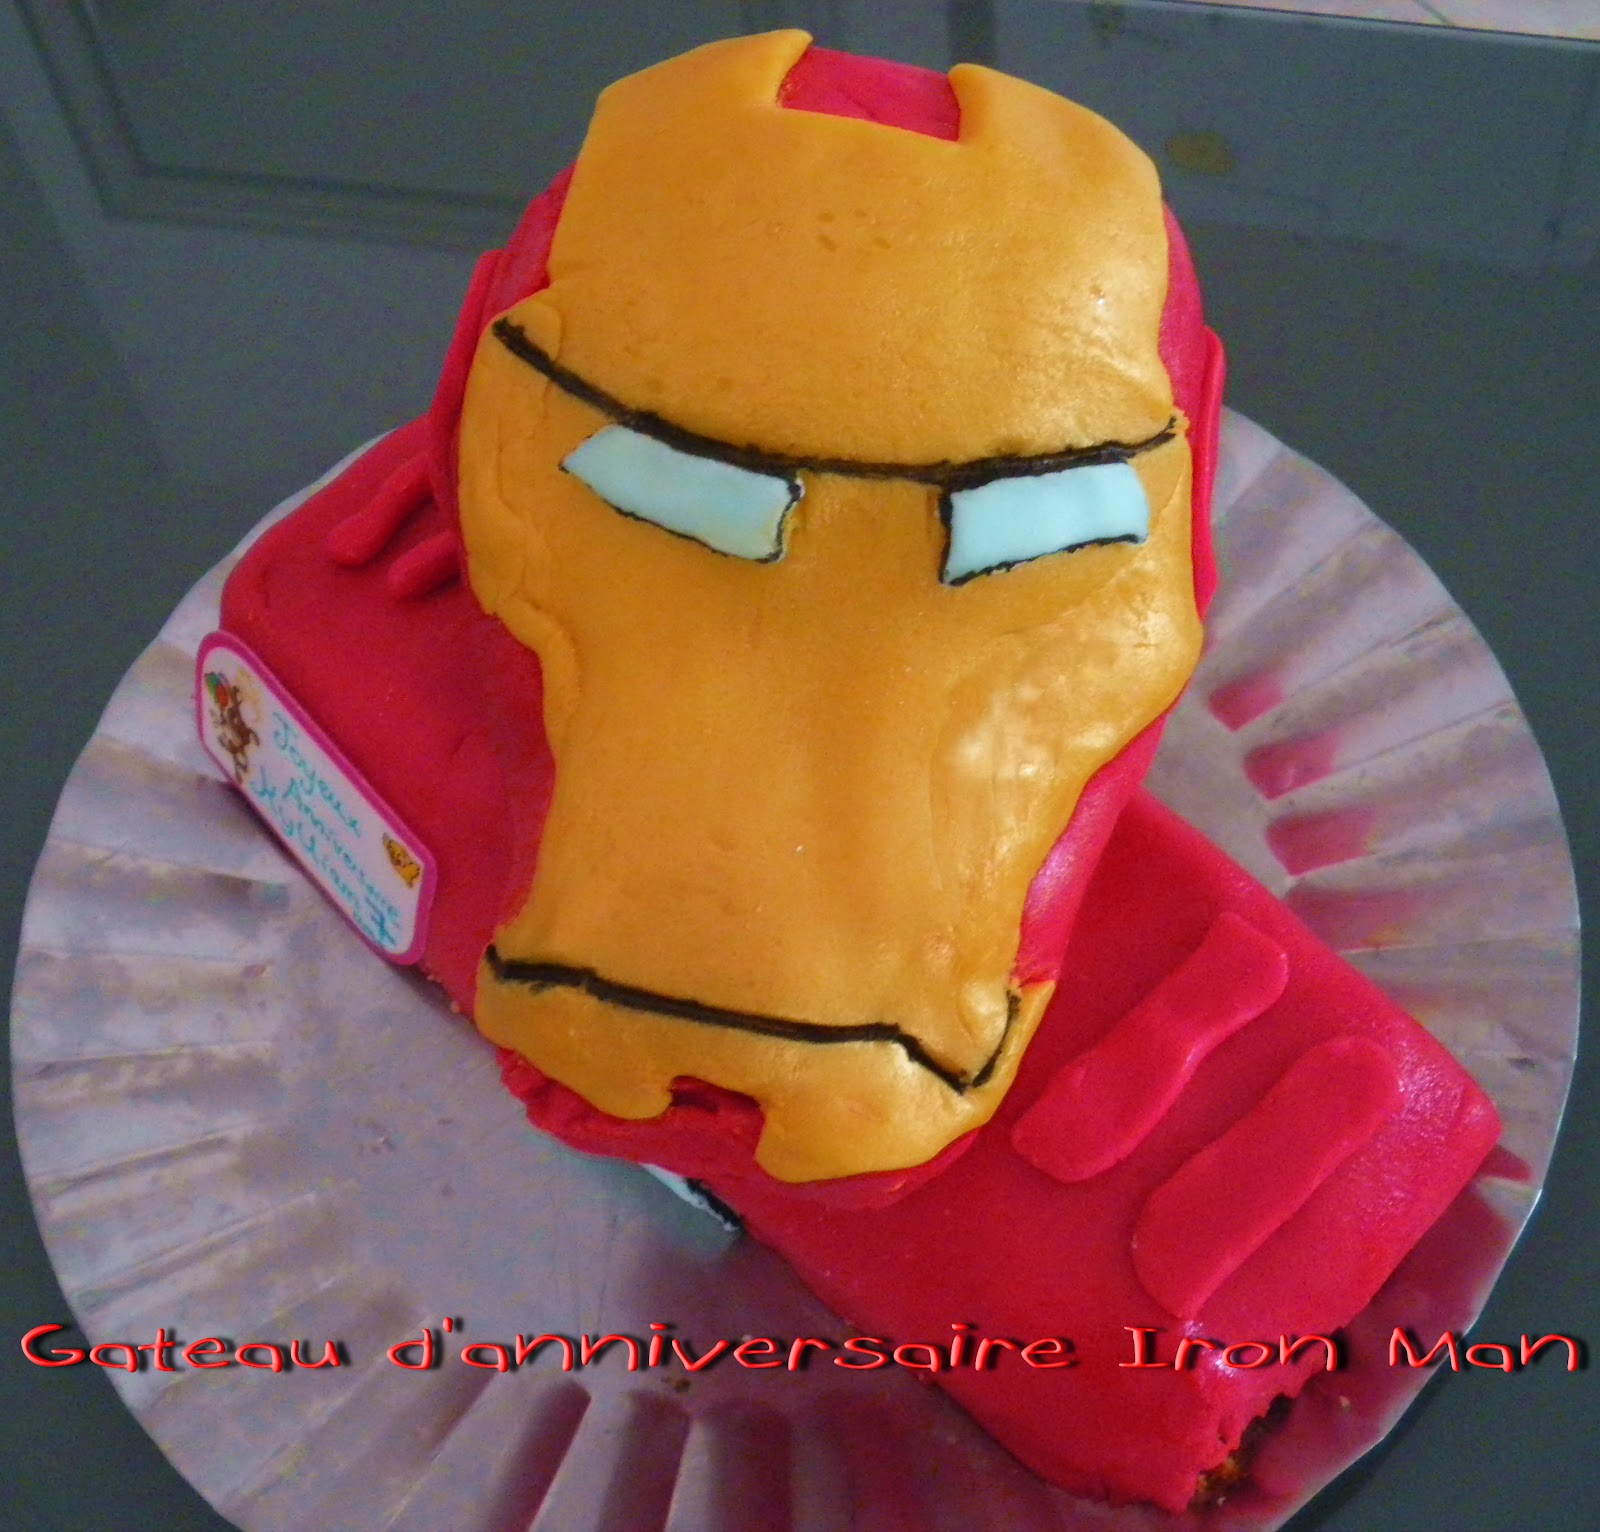 Gateau Gaga Love Cakes Gateau D Anniversaire Iron Man De Mon Kikinou Qui A 7 Ans